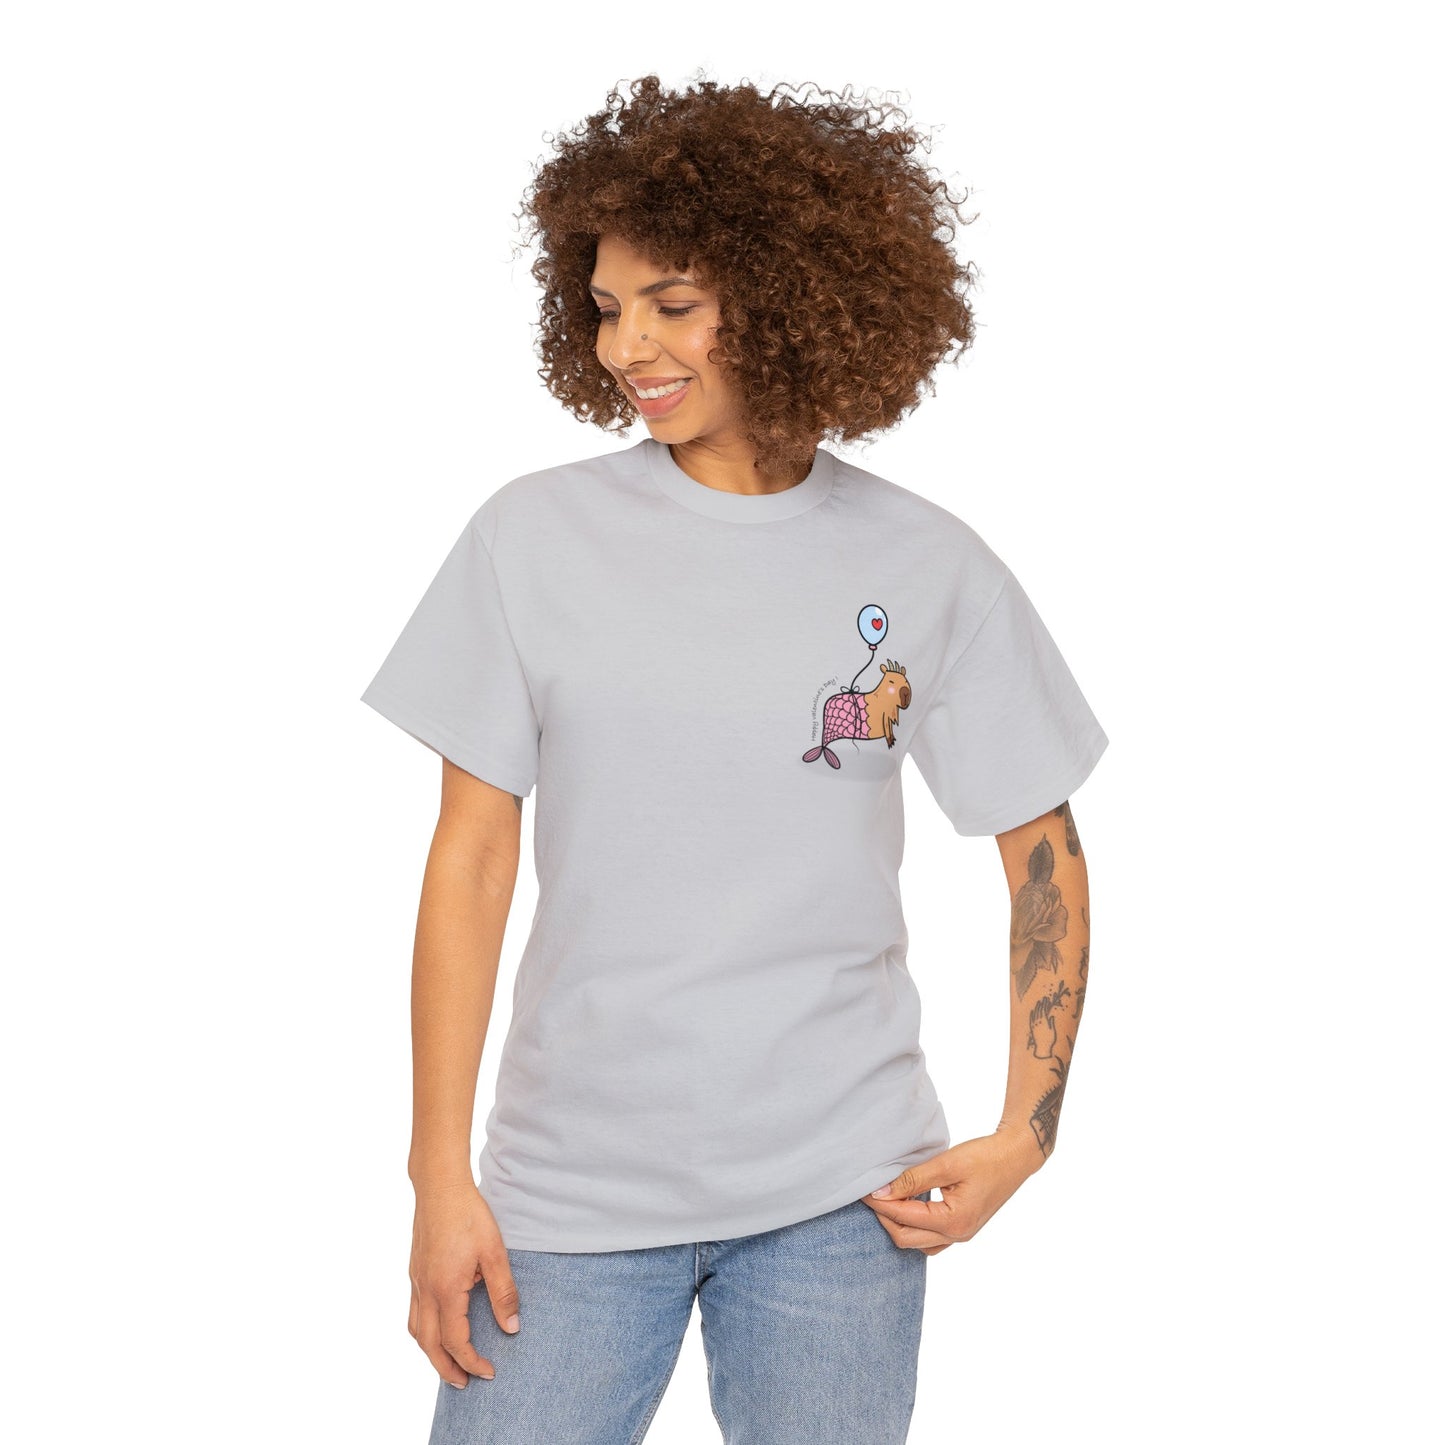 CapricornT-shirt Women